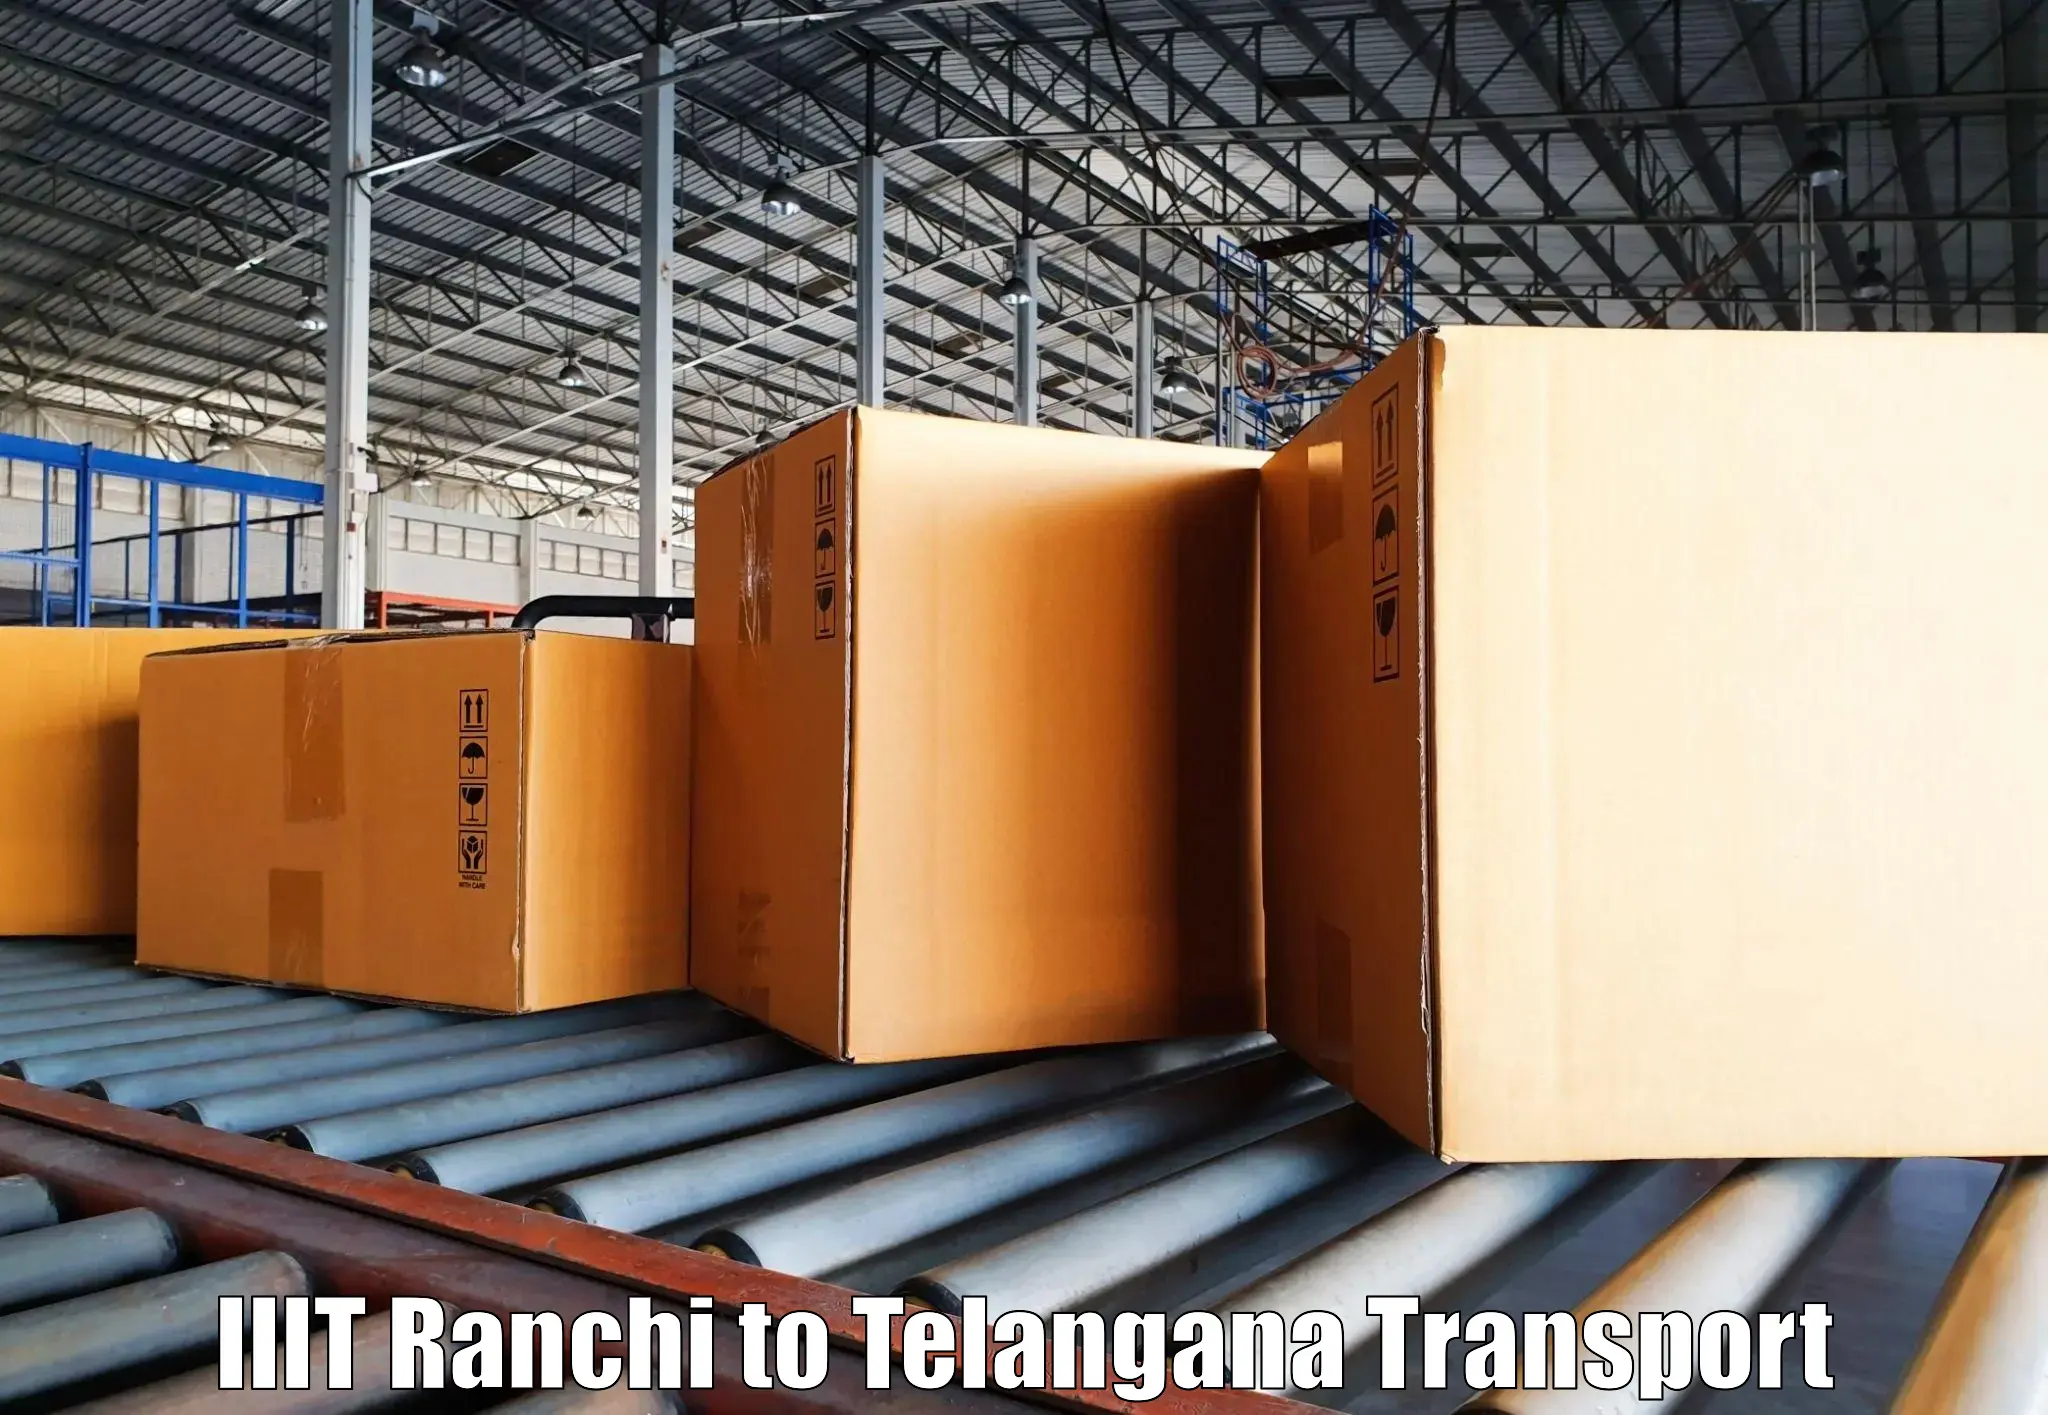 Online transport service IIIT Ranchi to Patancheru